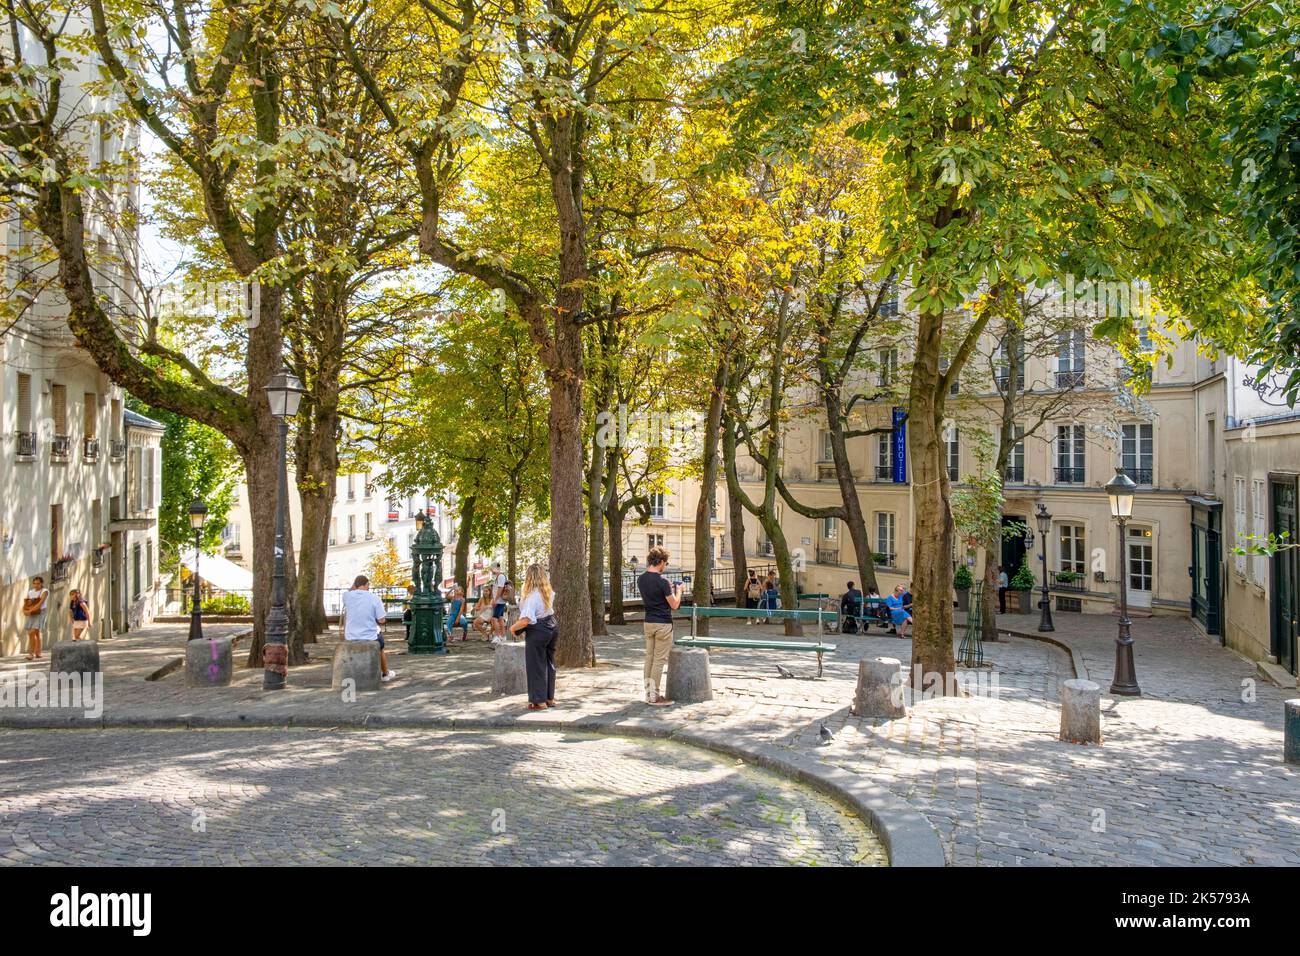 France, Paris, quartier de Montmartre, place Emile Goudeau, Picasso y vivaient Banque D'Images